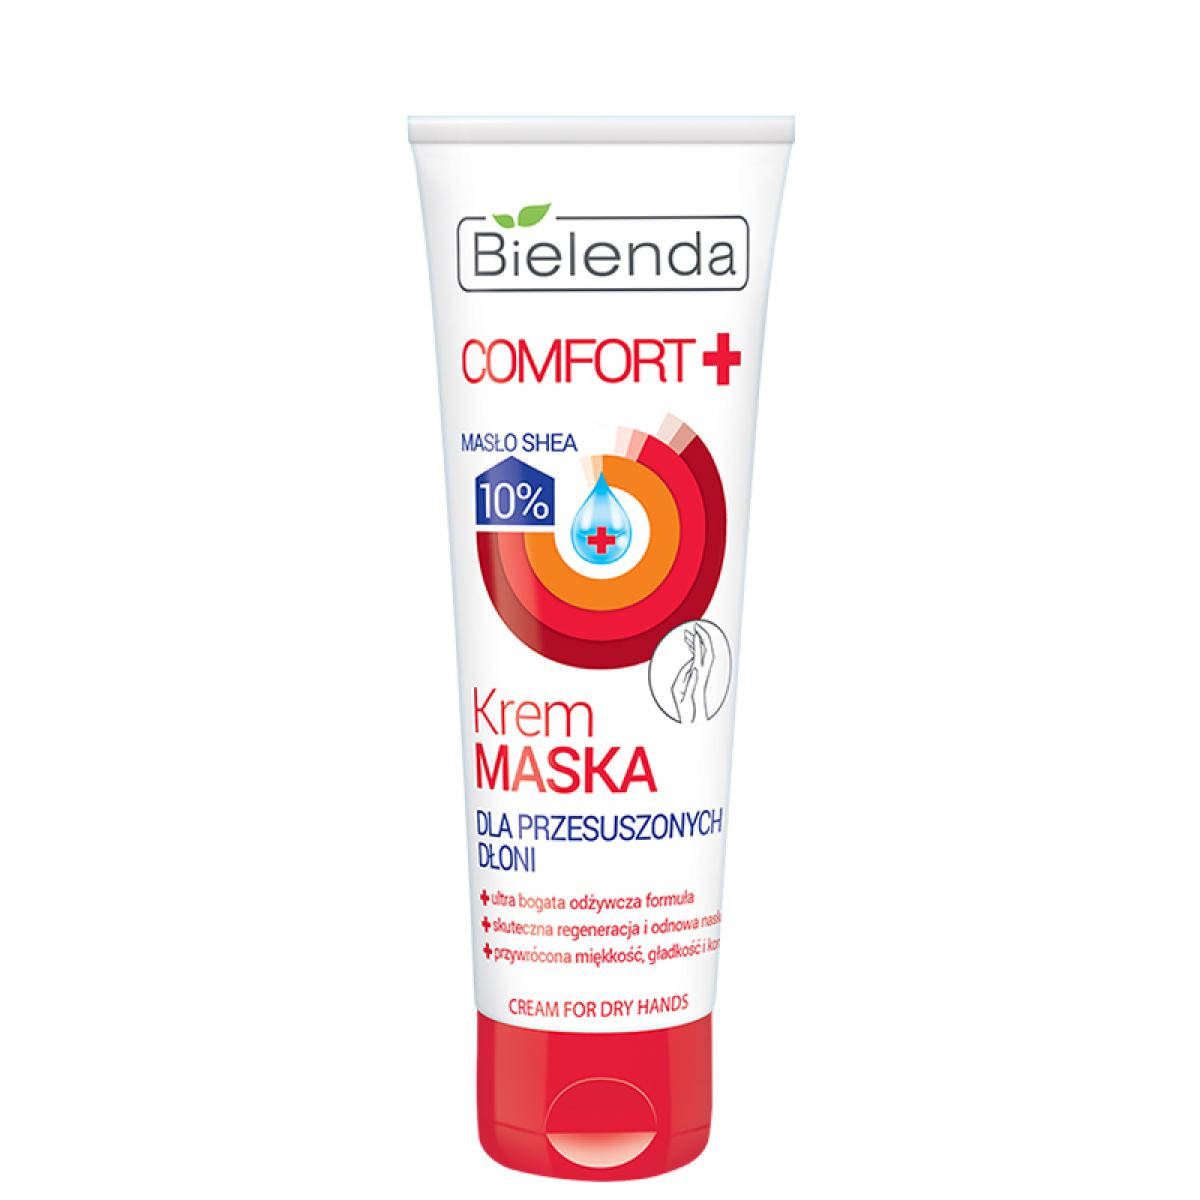 کرم مرطوب کننده و تغذیه کننده دست - Bielenda Comfort Moisturizing & Nourishing Hand Cream For Dry Skin 75ml